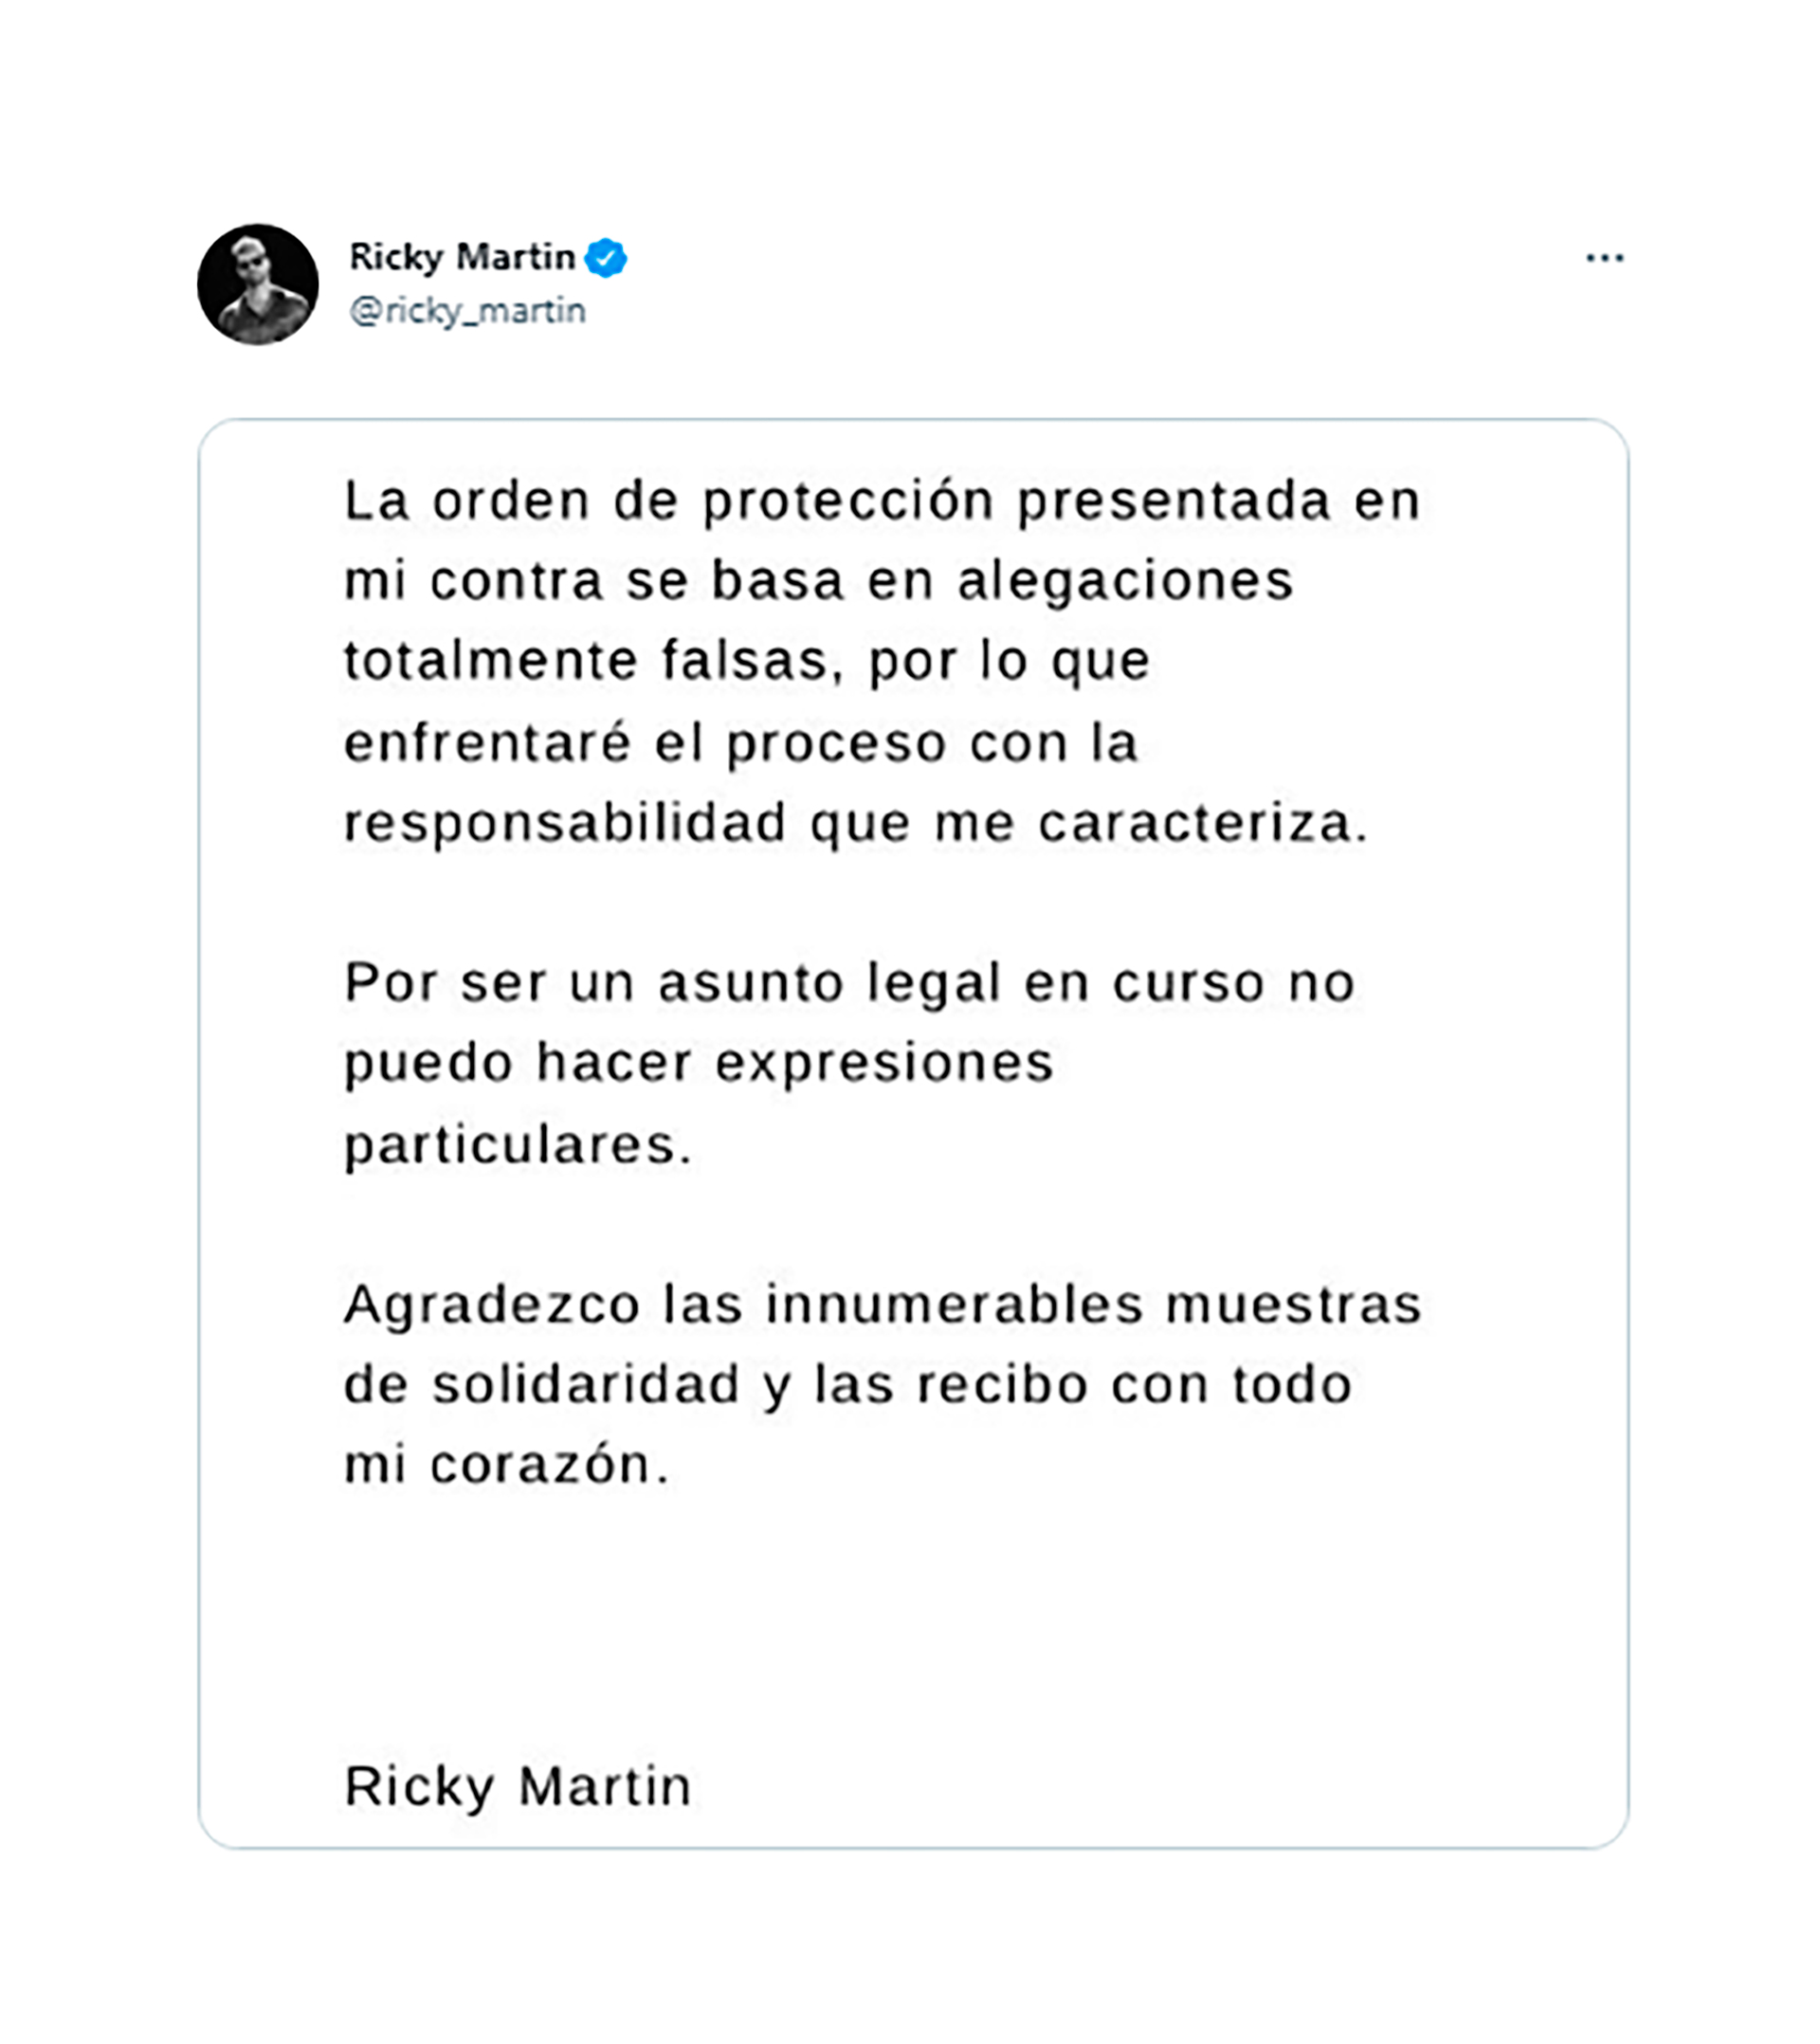 El comunicado de Ricky Martin en Twitter